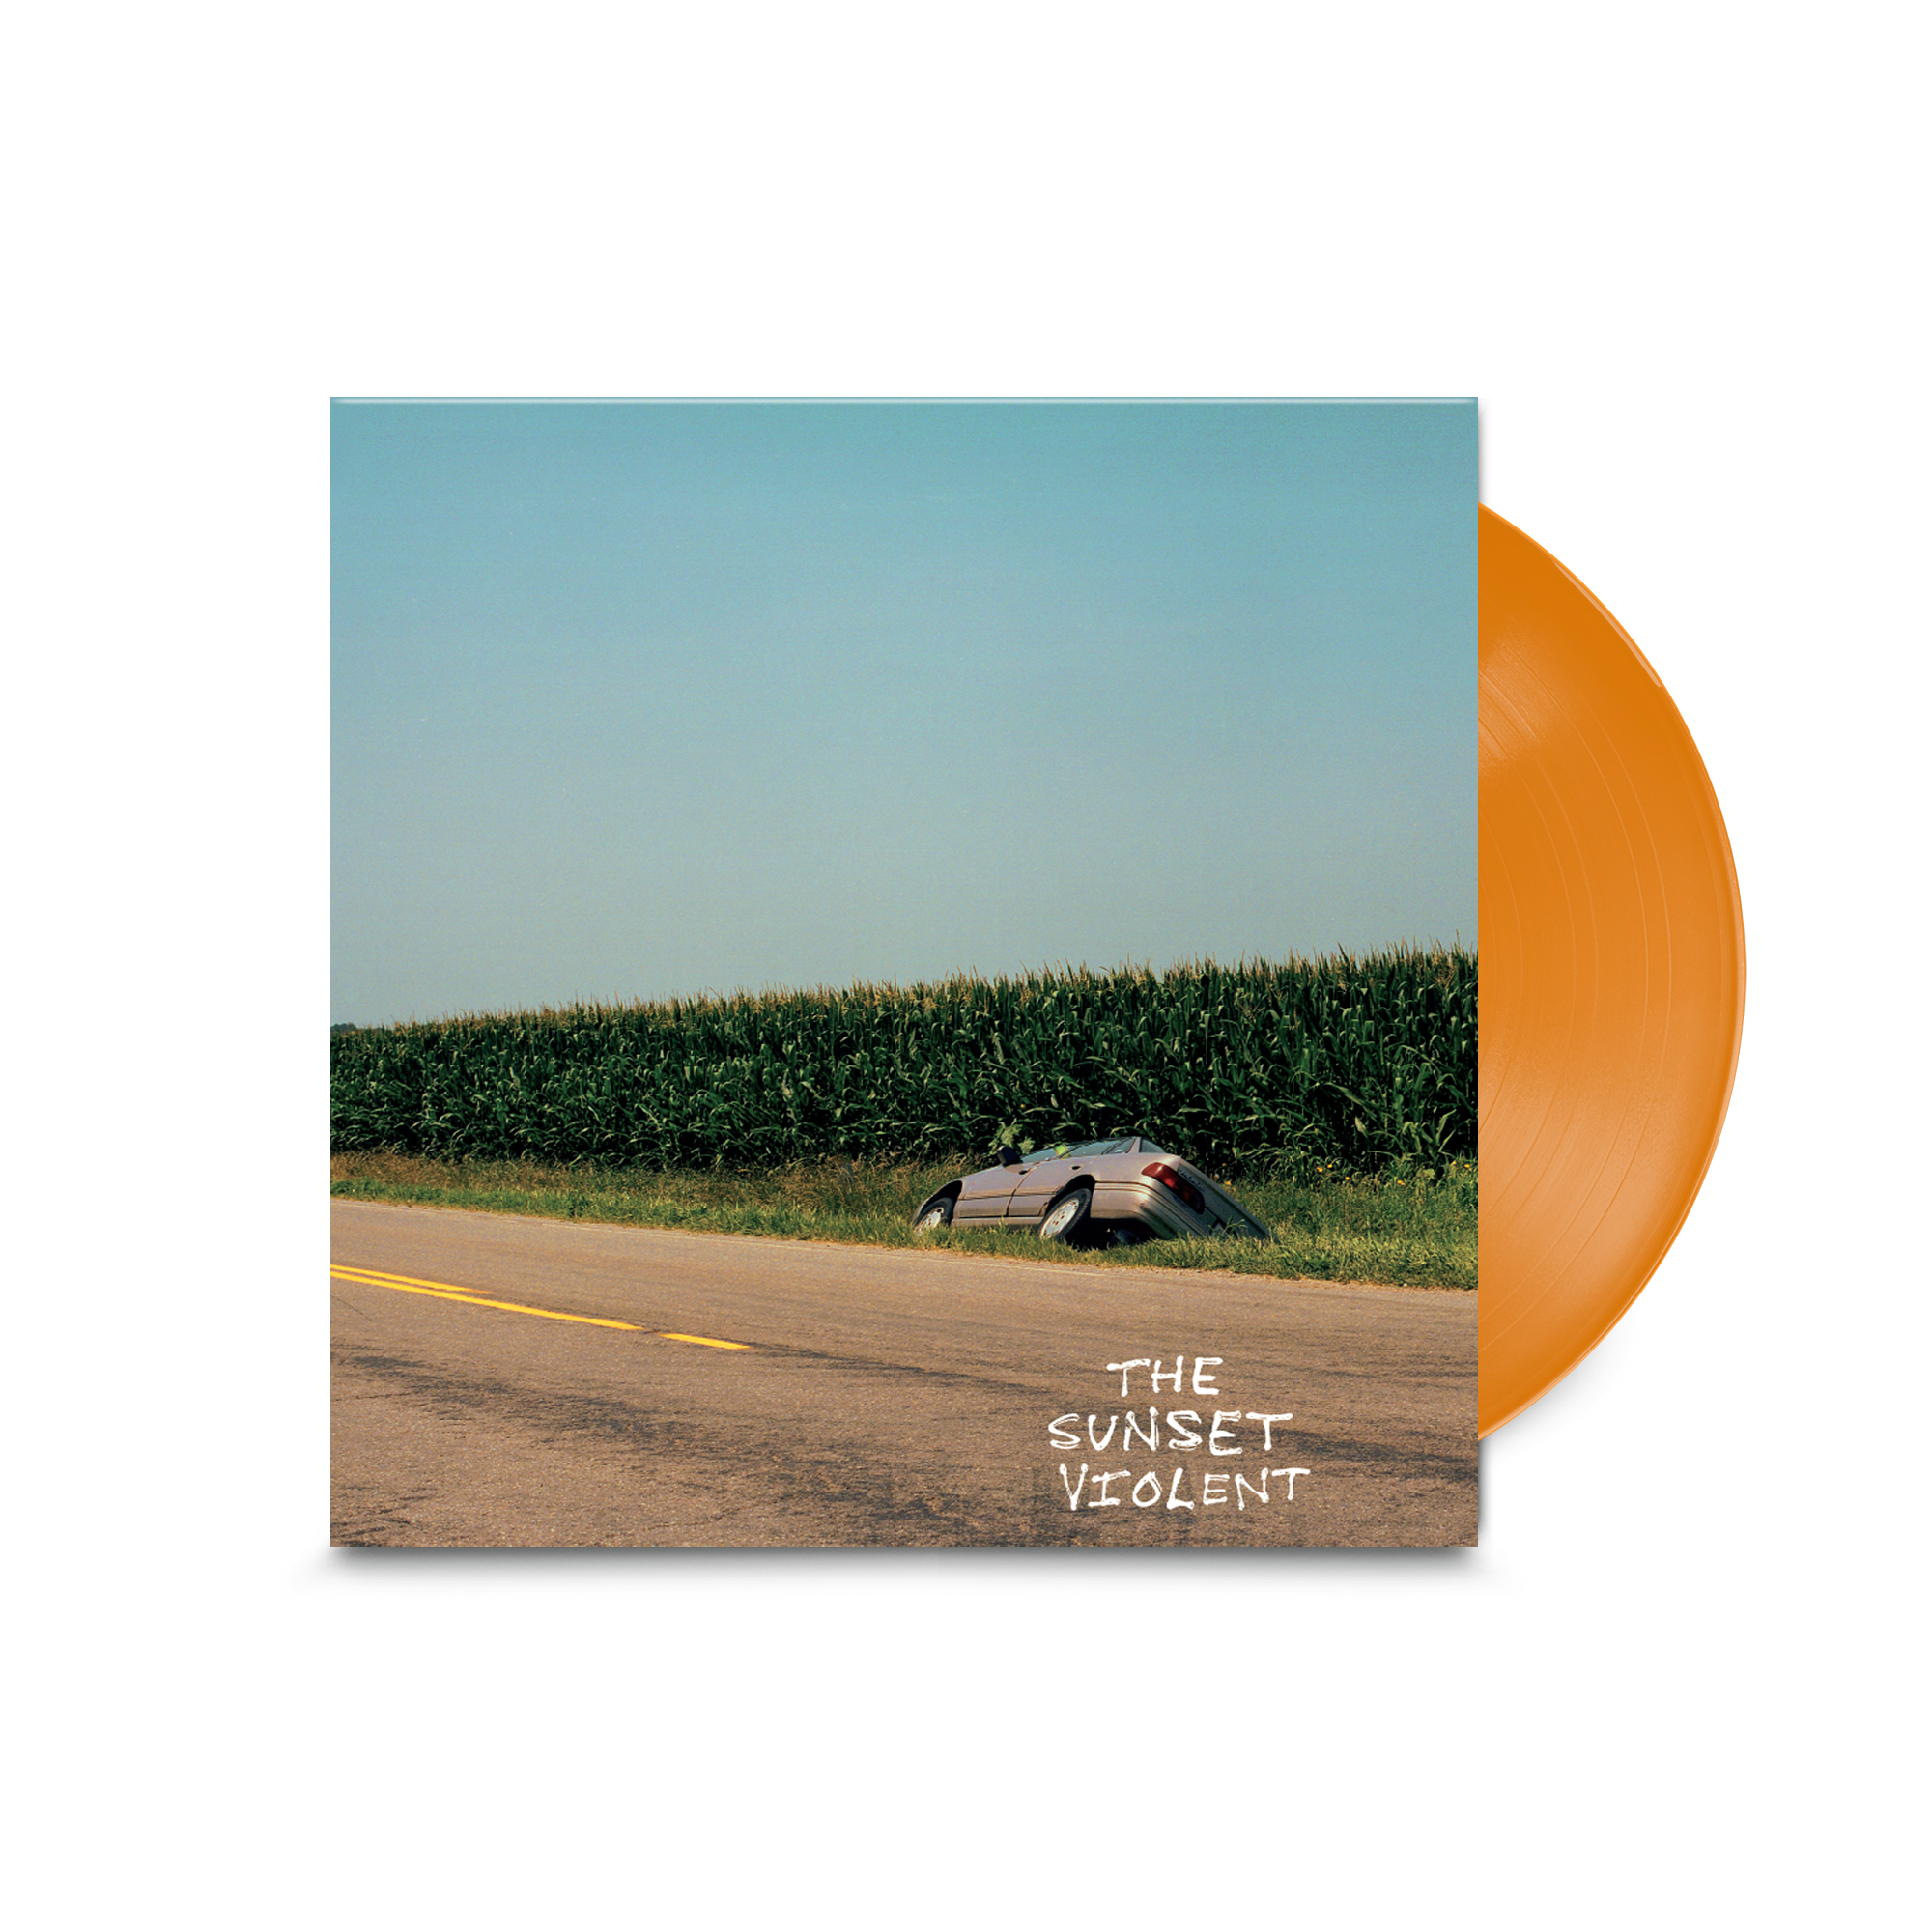 The Sunset Violent: Limited Orange Vinyl LP & Signed Print